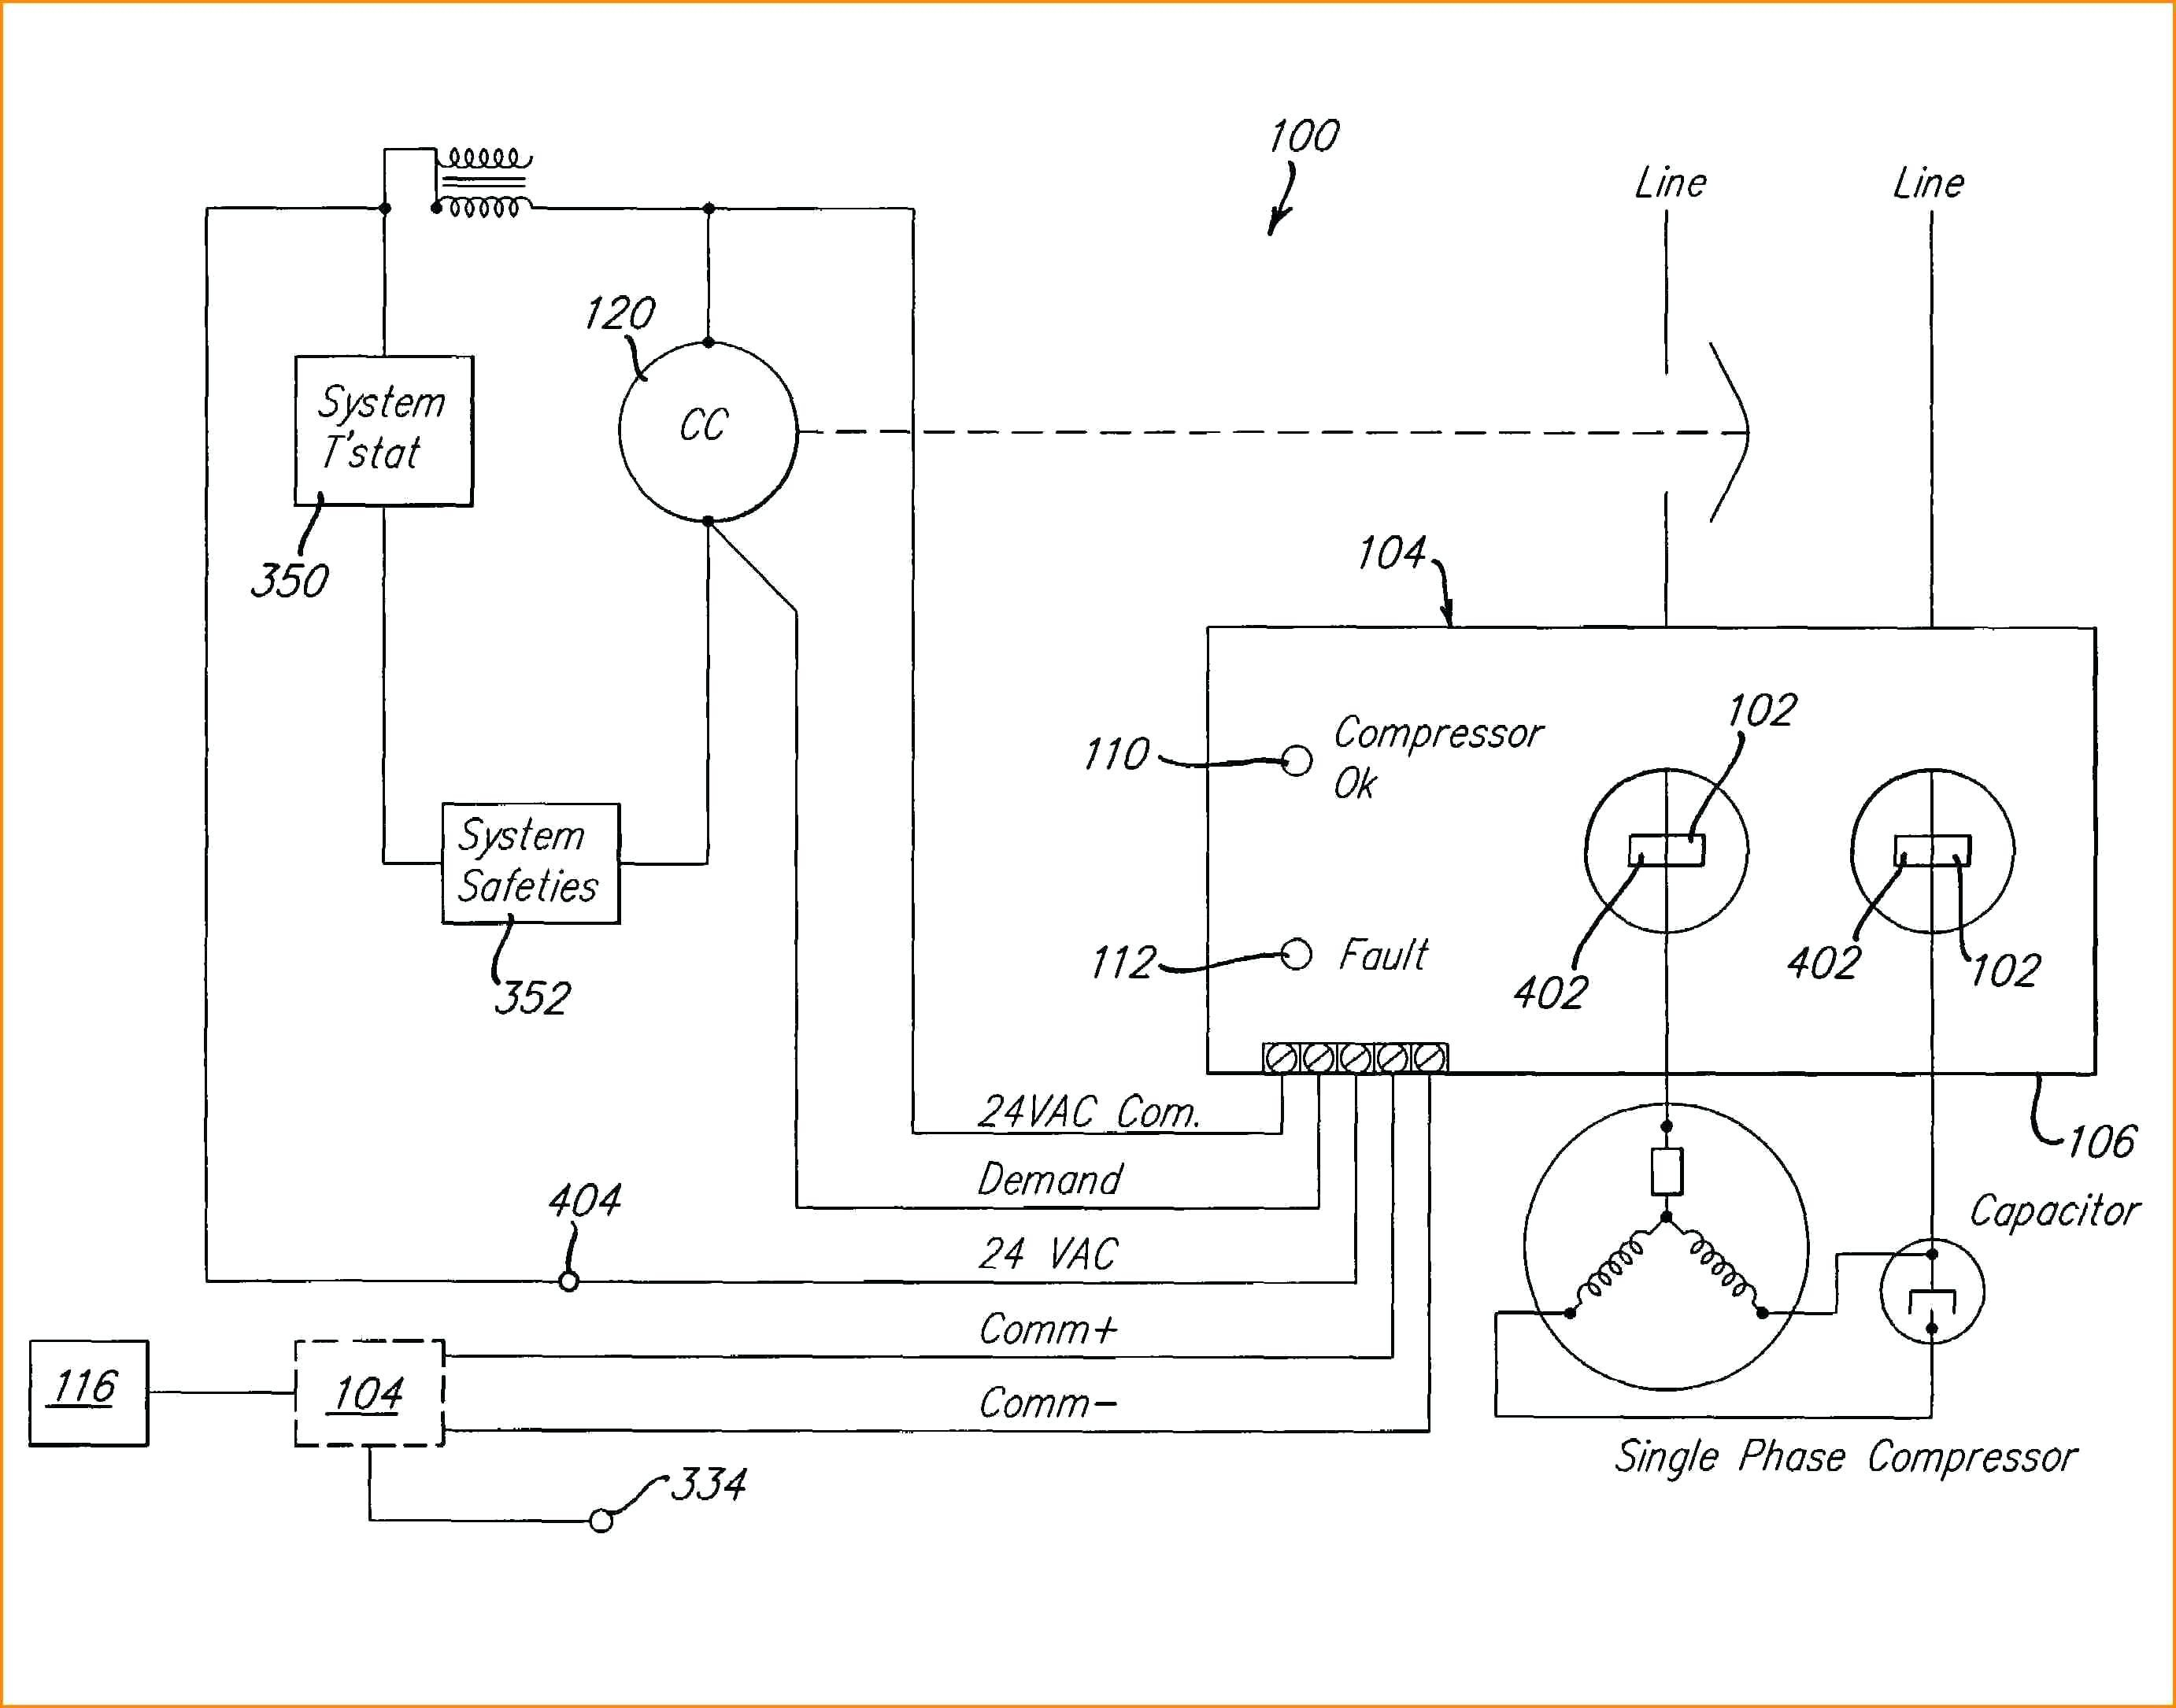 Inspirational Air Compressor Wiring Diagram 230V 1 Phase 19 3 - Air Compressor Wiring Diagram 230V 1 Phase